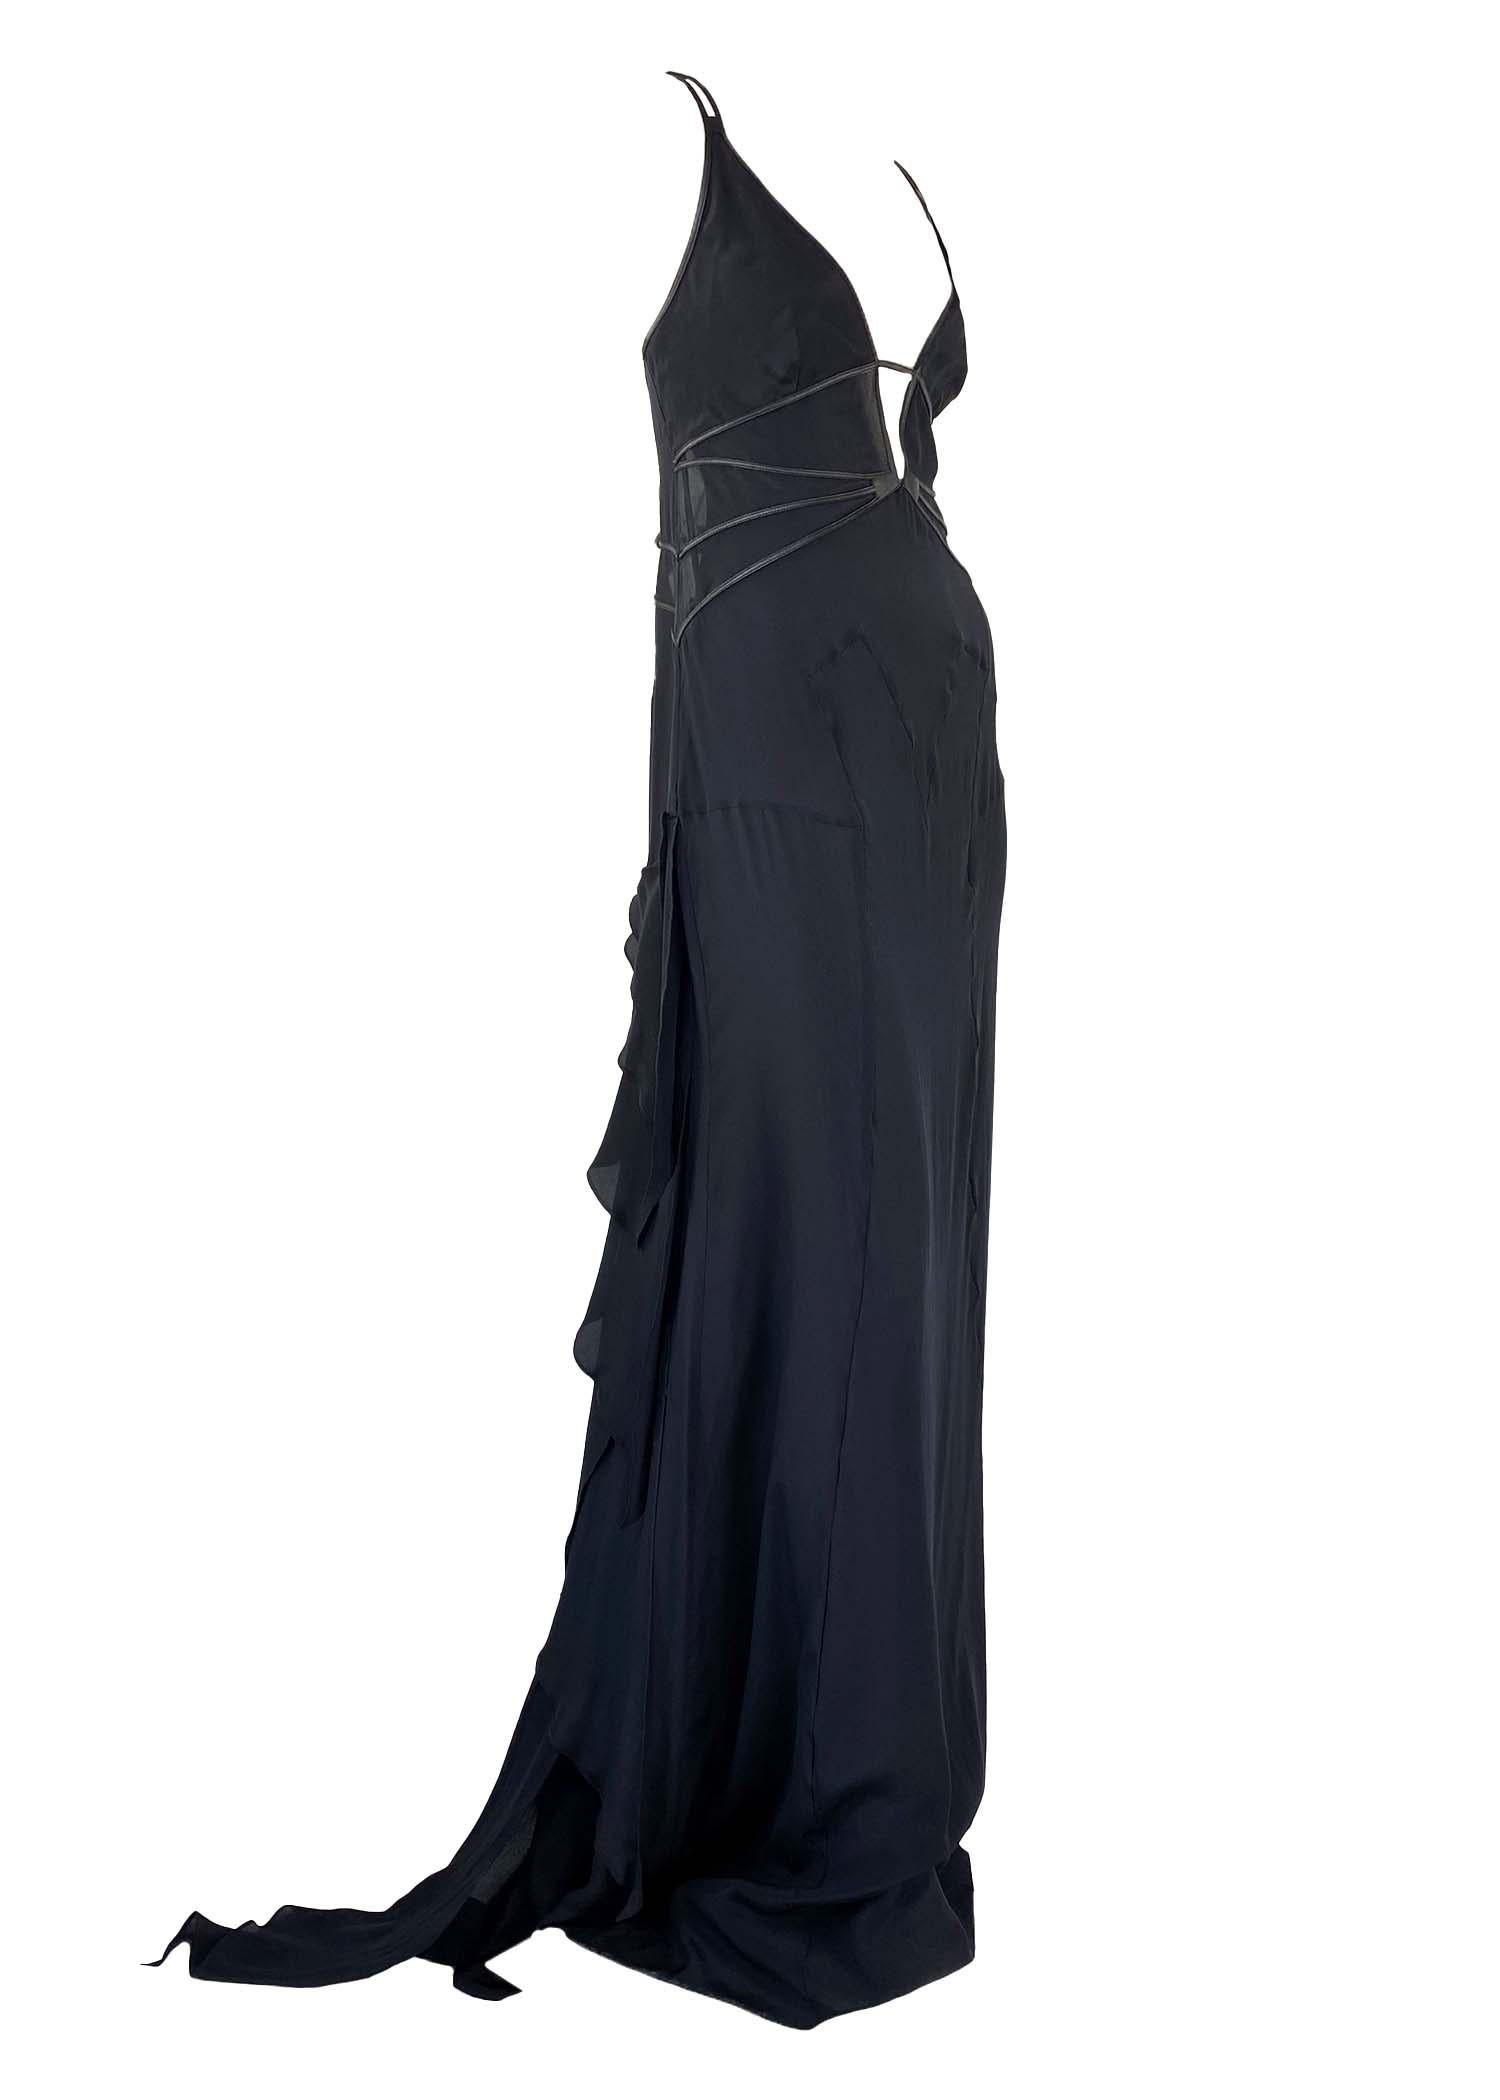 Ich präsentiere ein wunderschönes schwarzes Kleid mit Rüschen von Gucci, entworfen von Tom Ford. Dieses atemberaubende Kleid stammt aus der Gucci Collection'S Herbst/Winter 2003. Dieses einzigartige Kleid war weder auf dem Laufsteg noch in der